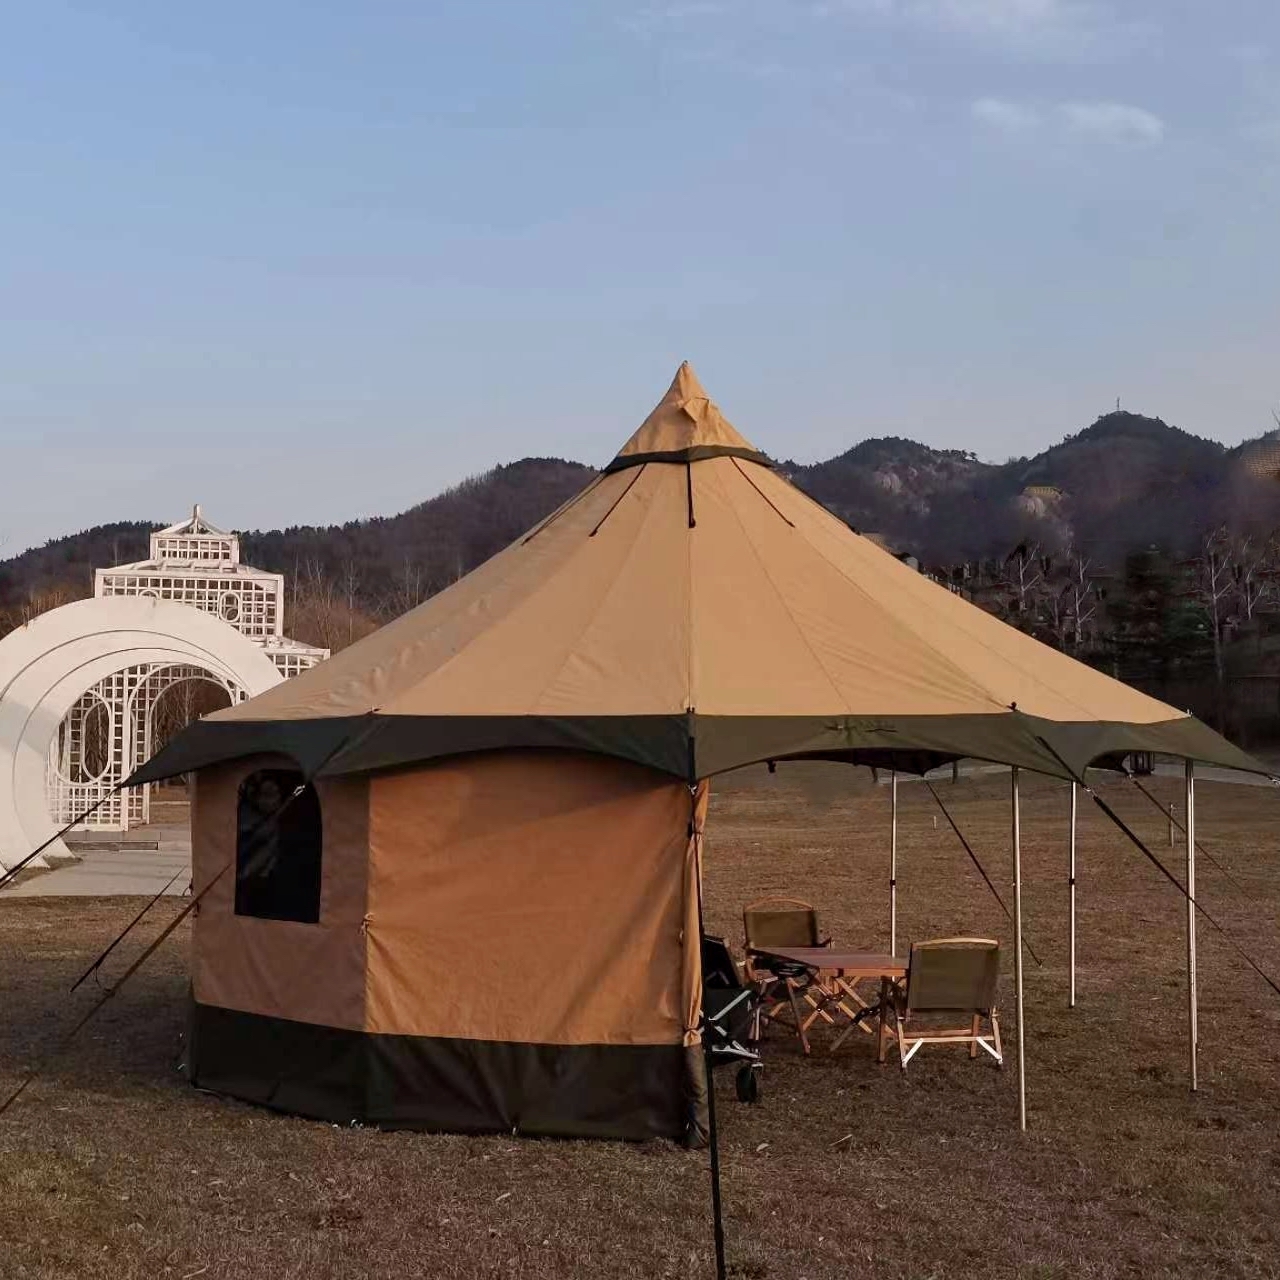 Большая всесезонная кемпинговая палатка True Brands Tibet Tent 20 Sky Pro отдыха на природе, фестиваля, мероприятий